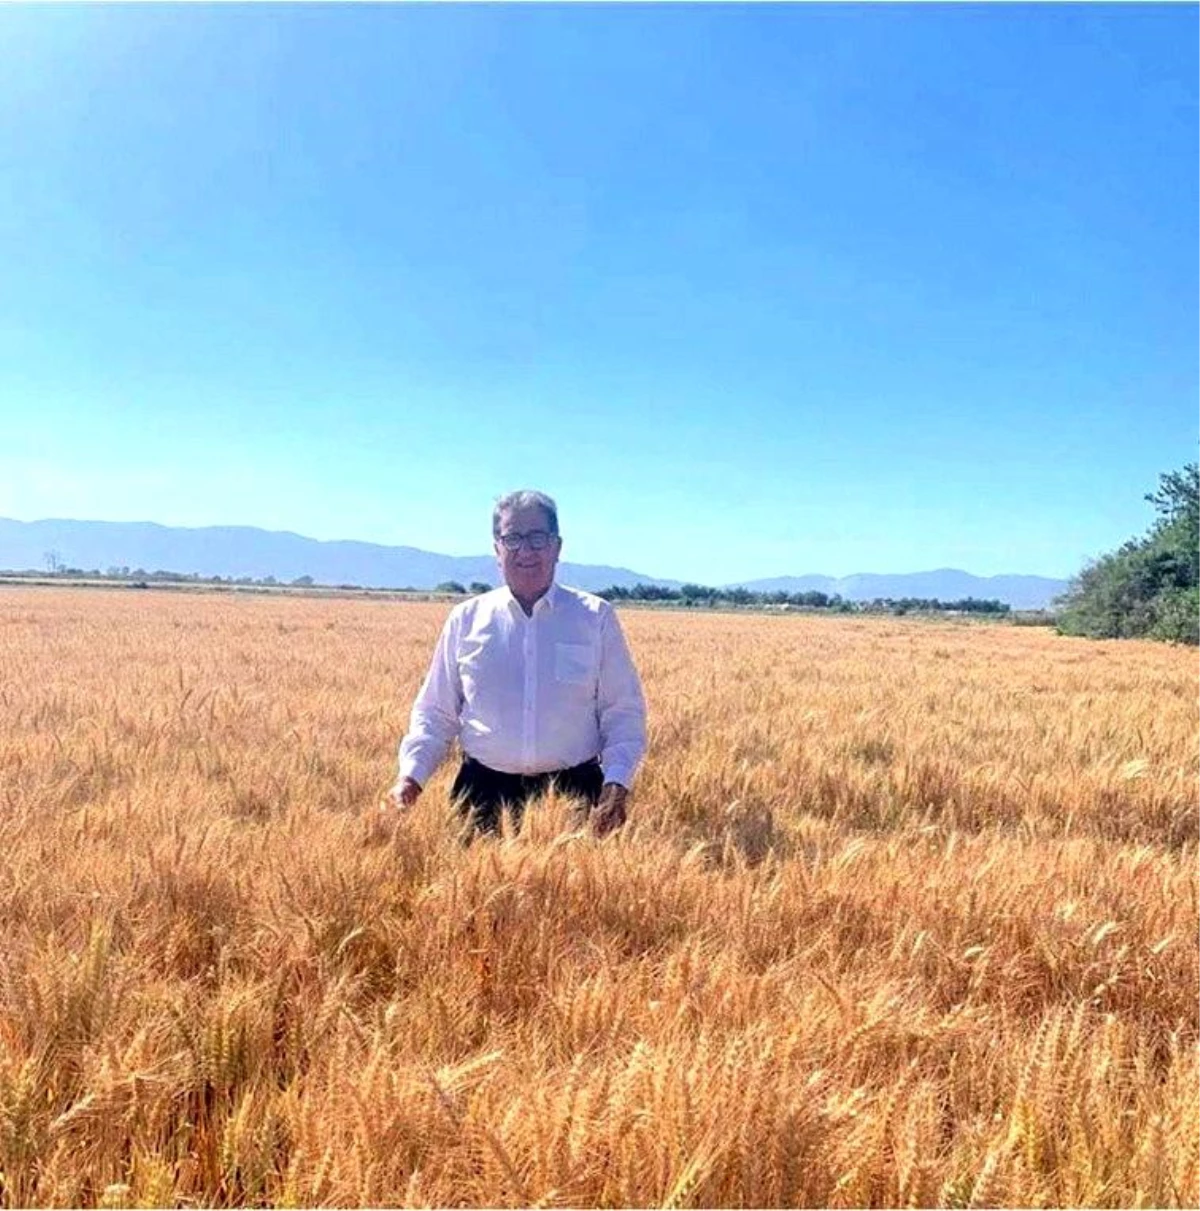 Söke Borsa Başkanı Nejat Sağel: "Buğday fiyatları sevindirdi"